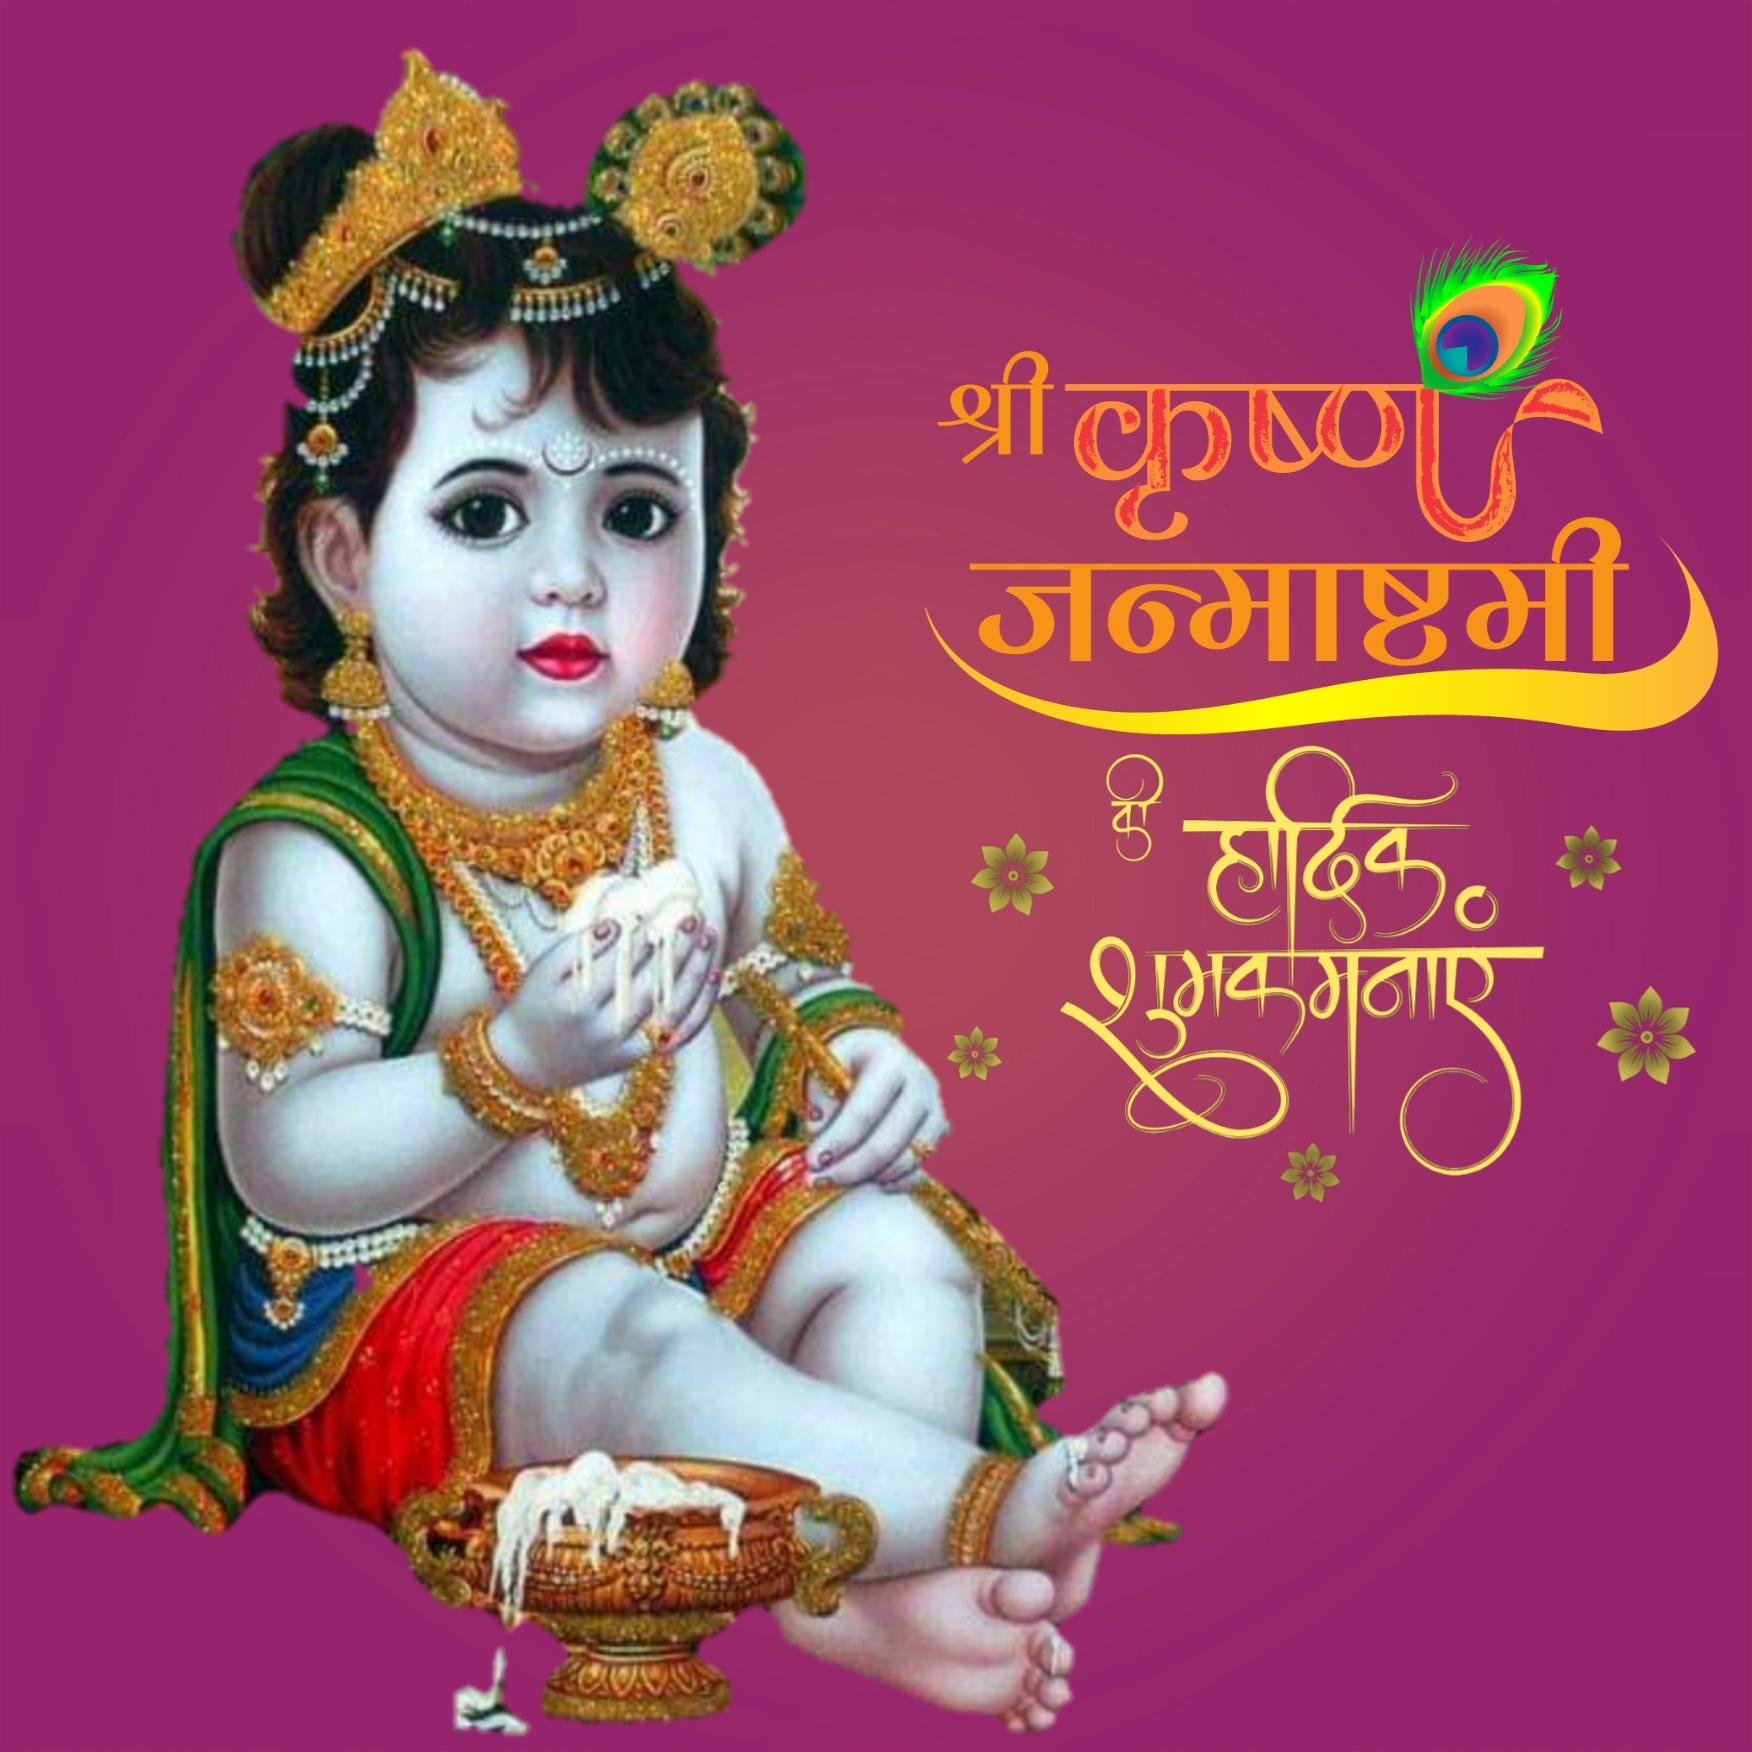 Happy Janmashtami Hindi Images